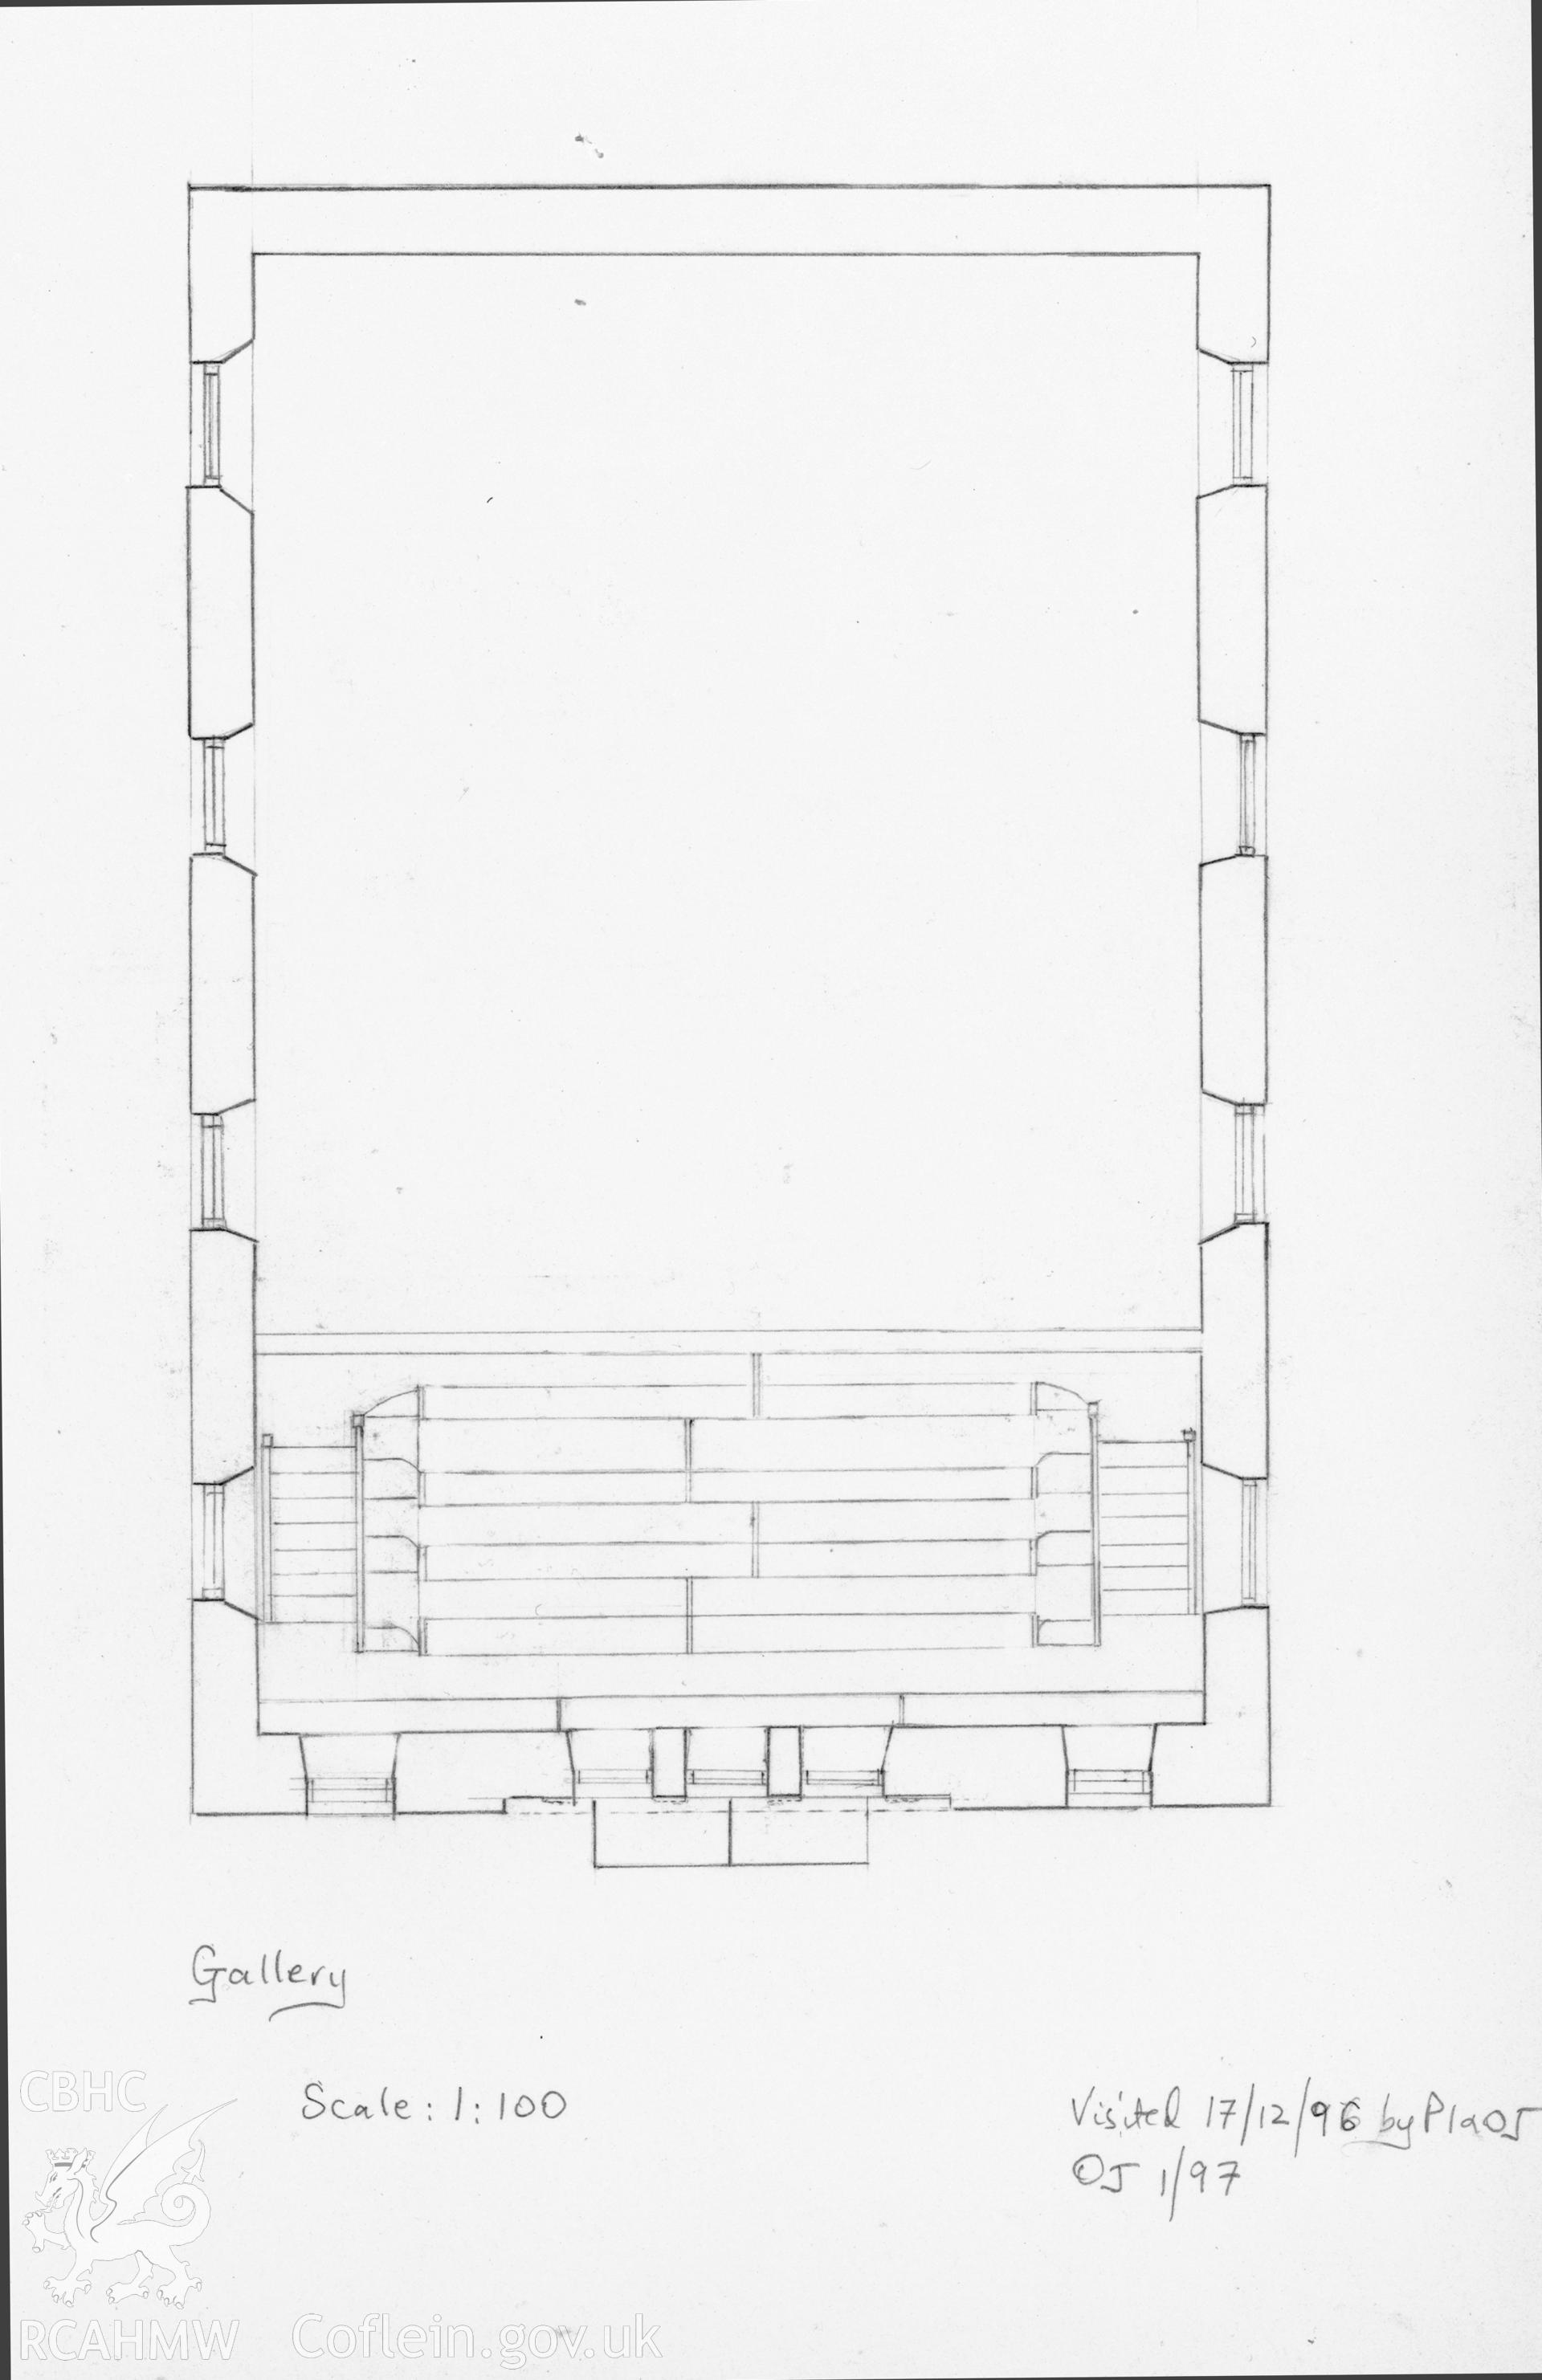 Llwynrhydowen New Chapel, Llandysul; Descriptive account & drawings showing SE elevation, ground floor plan & gallery plan by Olwen Jenkins dated 1997.